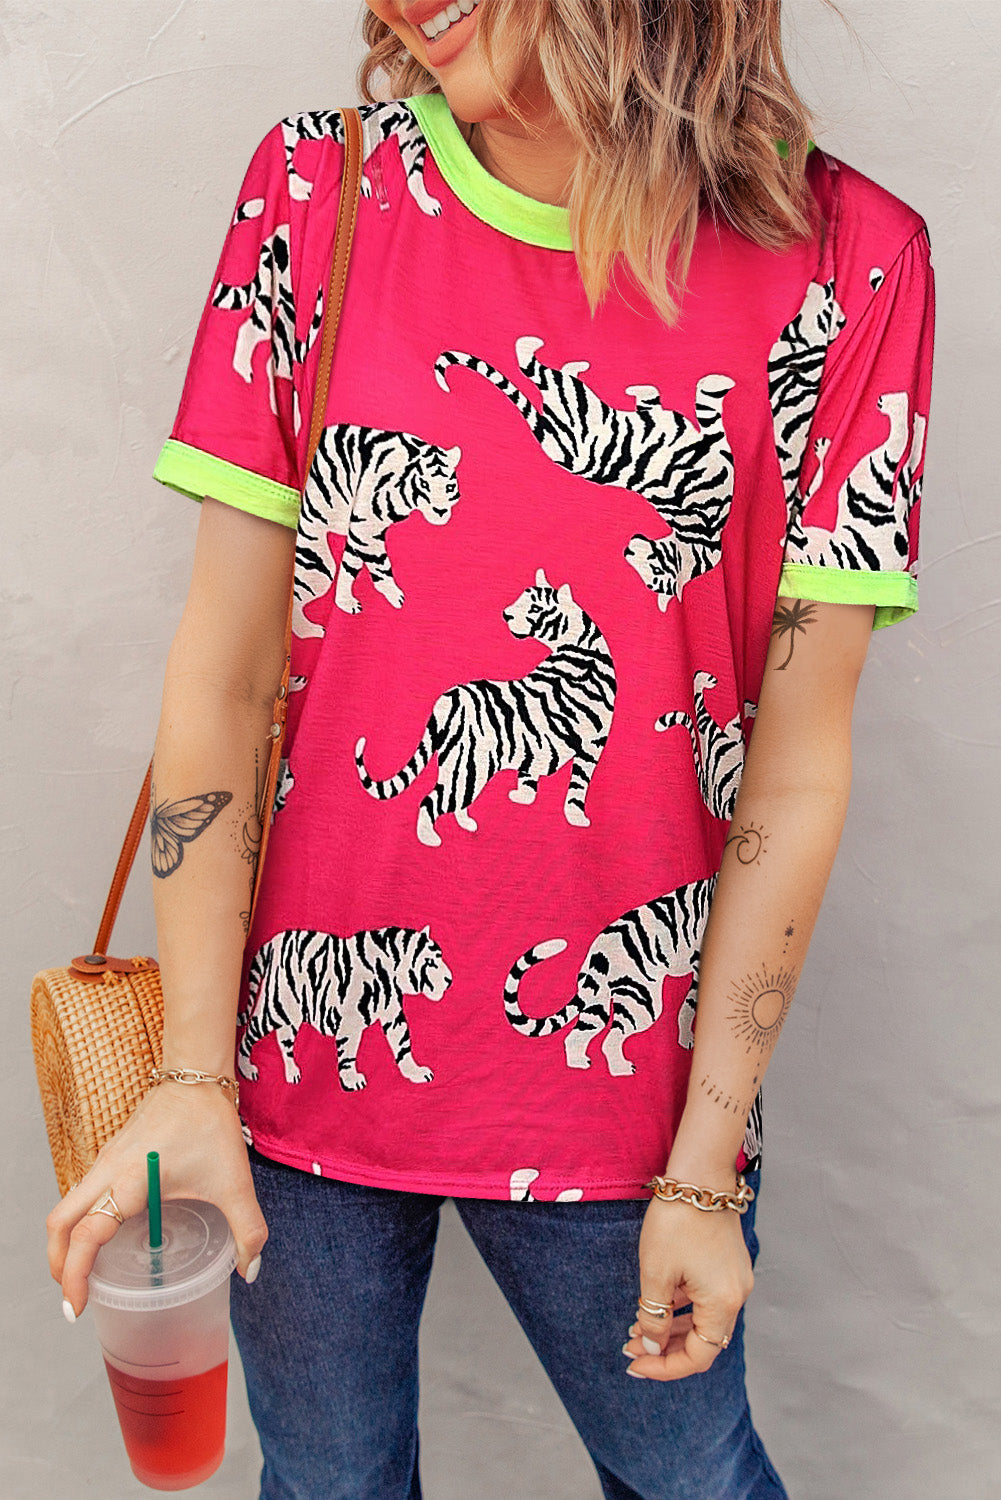 Rose Contrast Round Neck Short Sleeve Tiger Print Top Pre Order Tops JT's Designer Fashion